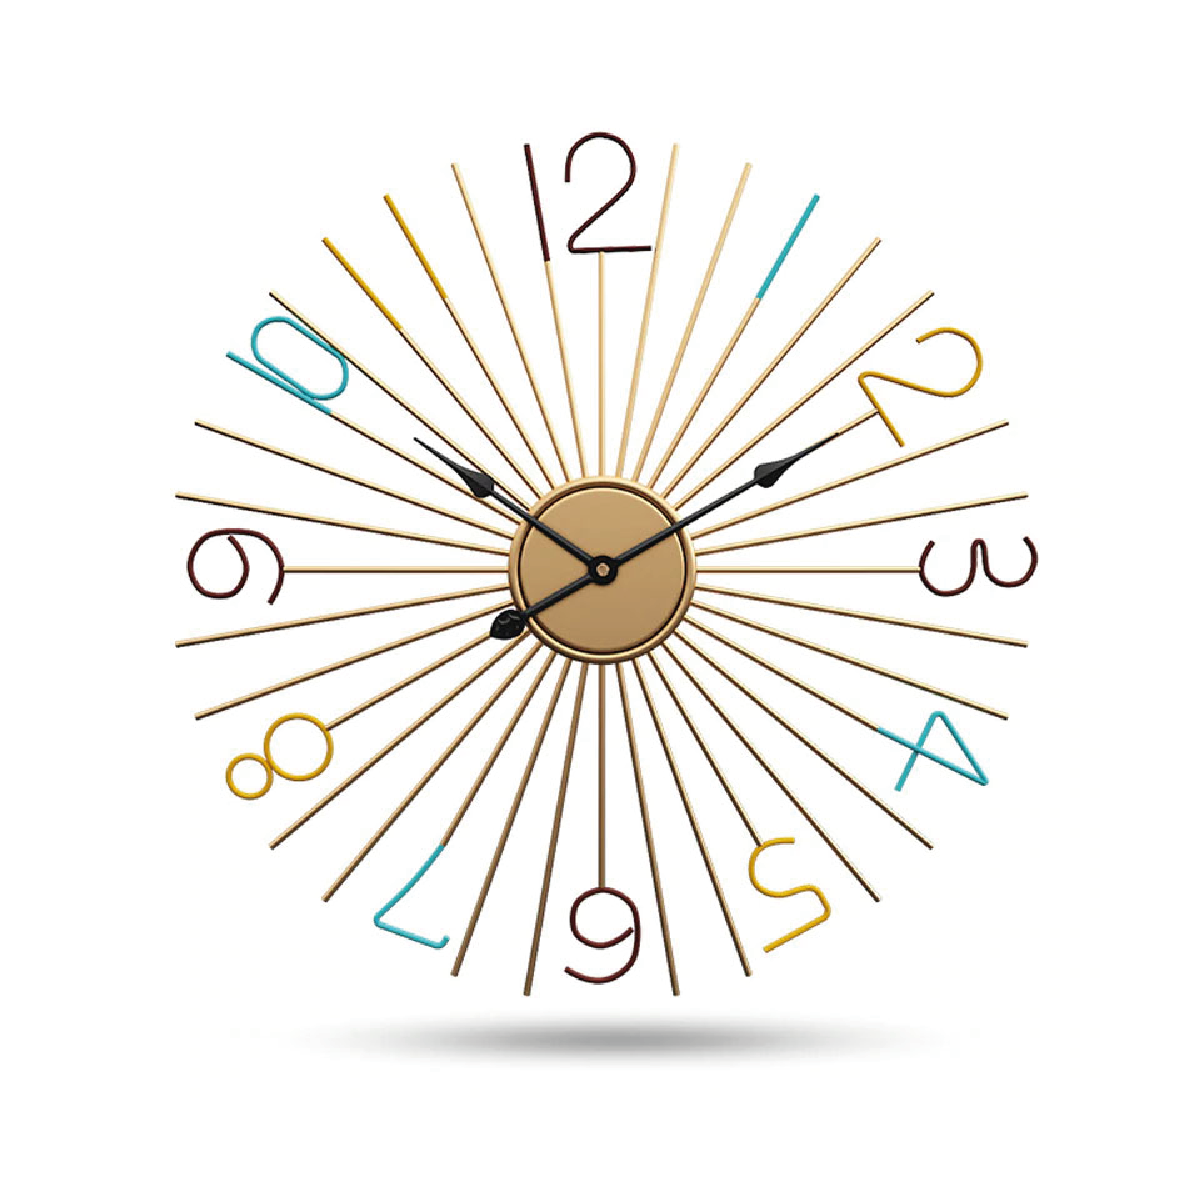 Reloj de Pared 60 cm metálico minimalista silencioso